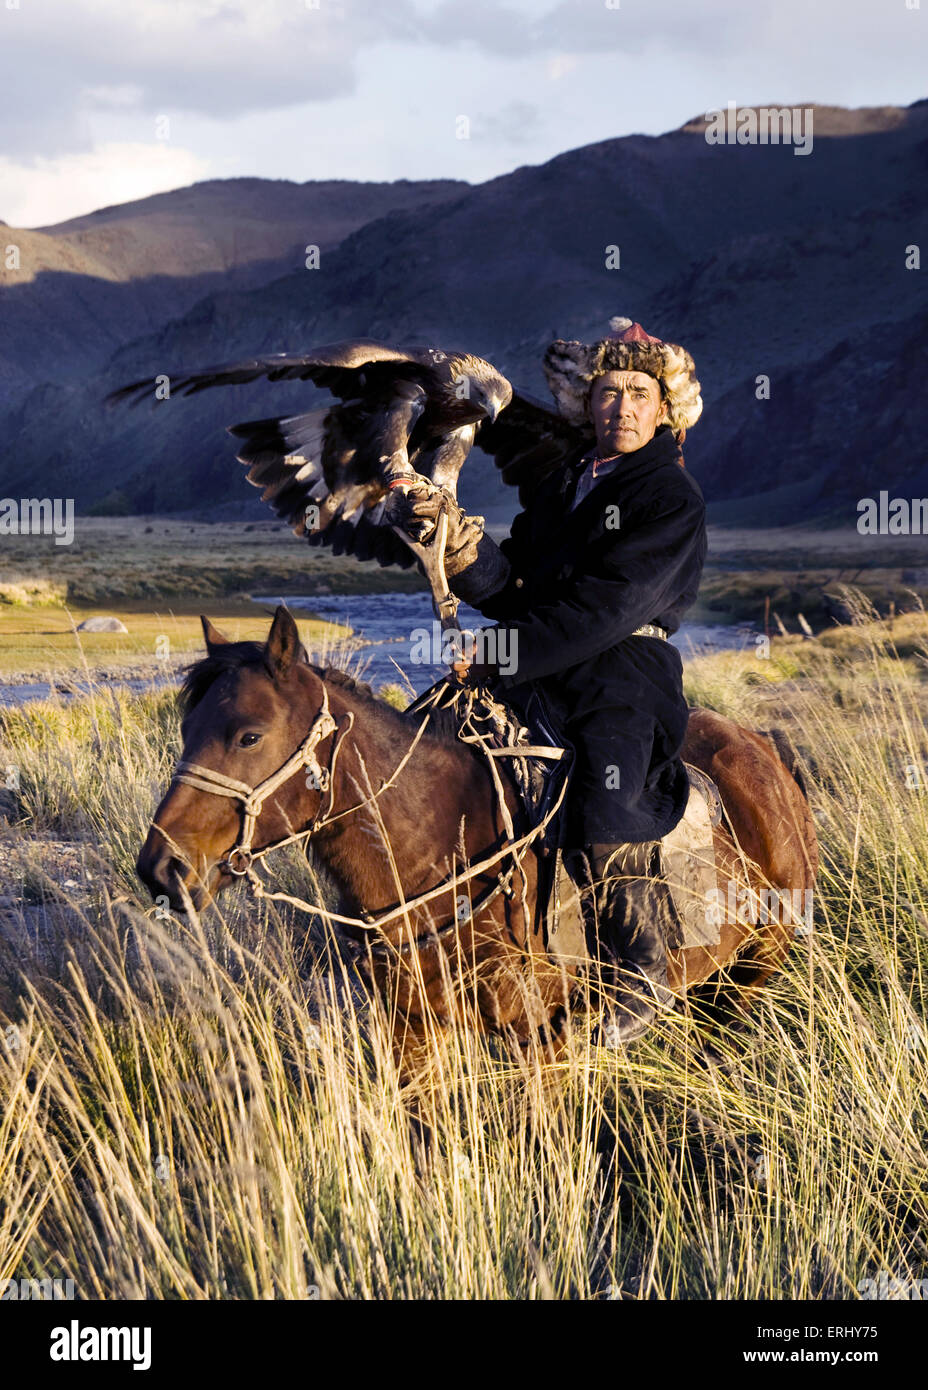 Traditionnellement les hommes kazakh chasser les renards et les loups l'aigle royal. Olgei,l'ouest de la Mongolie. J'ai eu la chance d'ha Banque D'Images